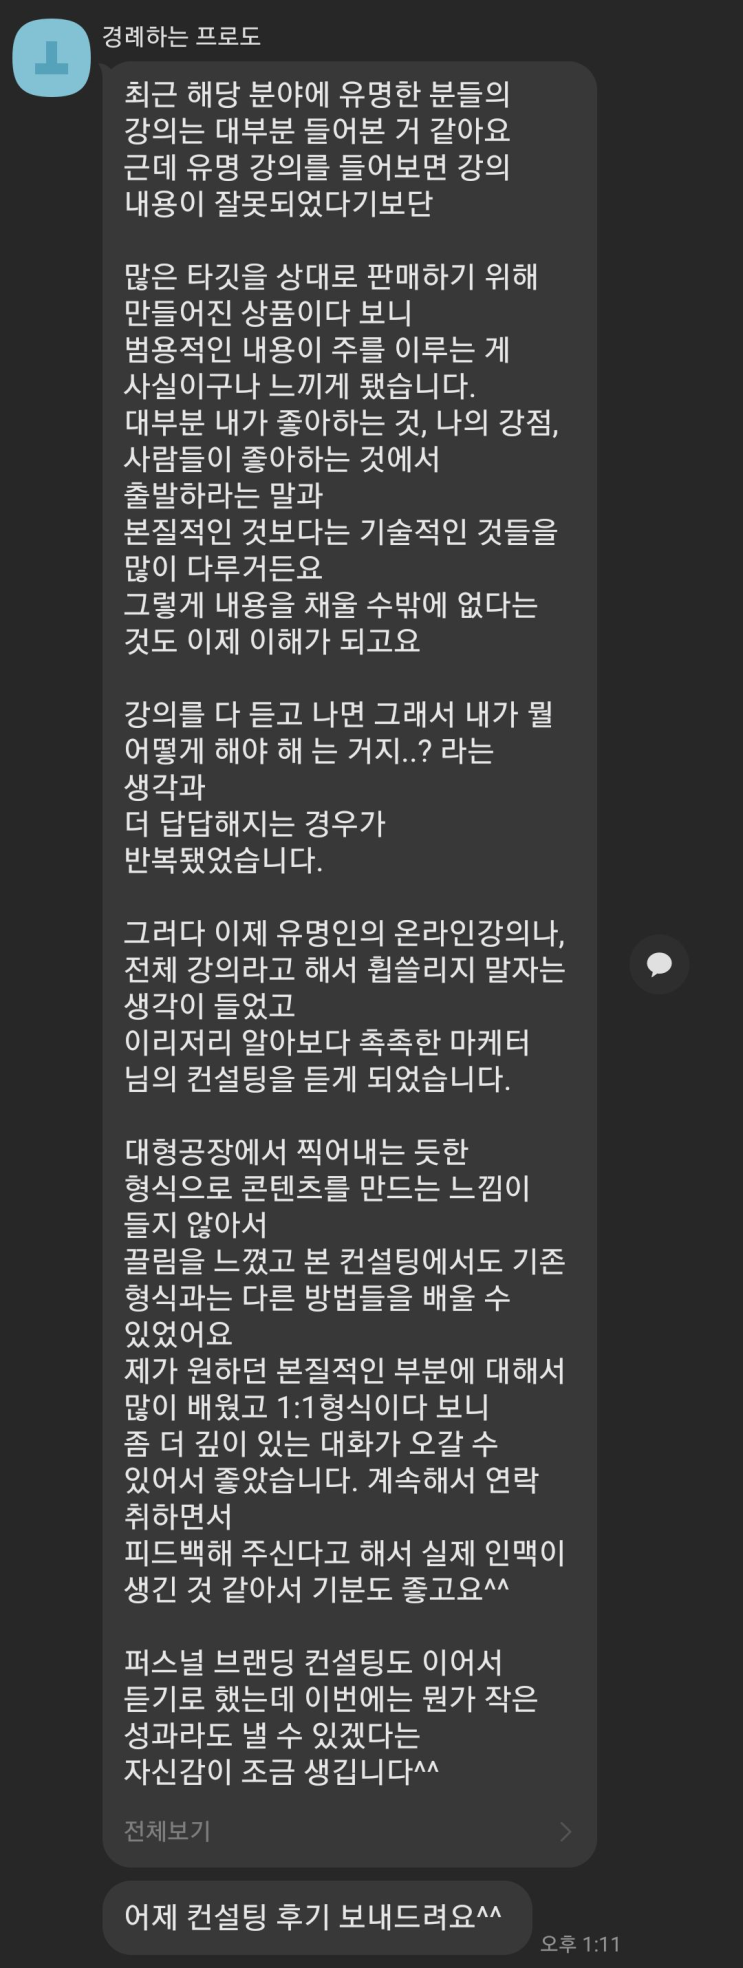 '촉촉한 제휴마케팅' 컨설팅 후기